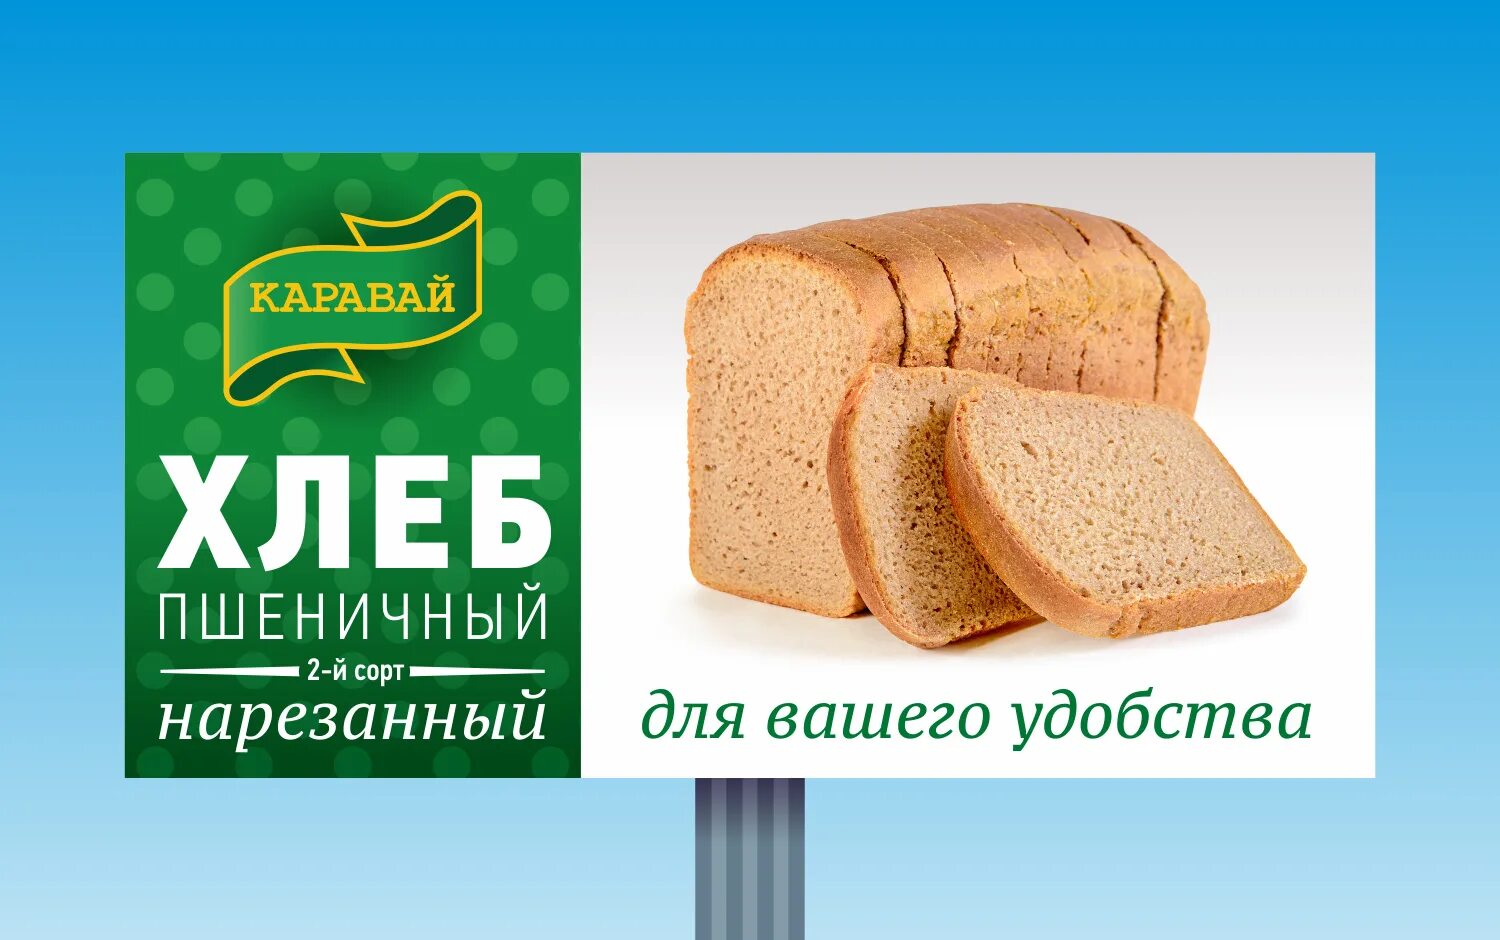 Купи пеки хабаровск. Реклама хлеба. Реклама хлебобулочных изделий. Баннер хлебобулочных изделий. Баннер хлеб.